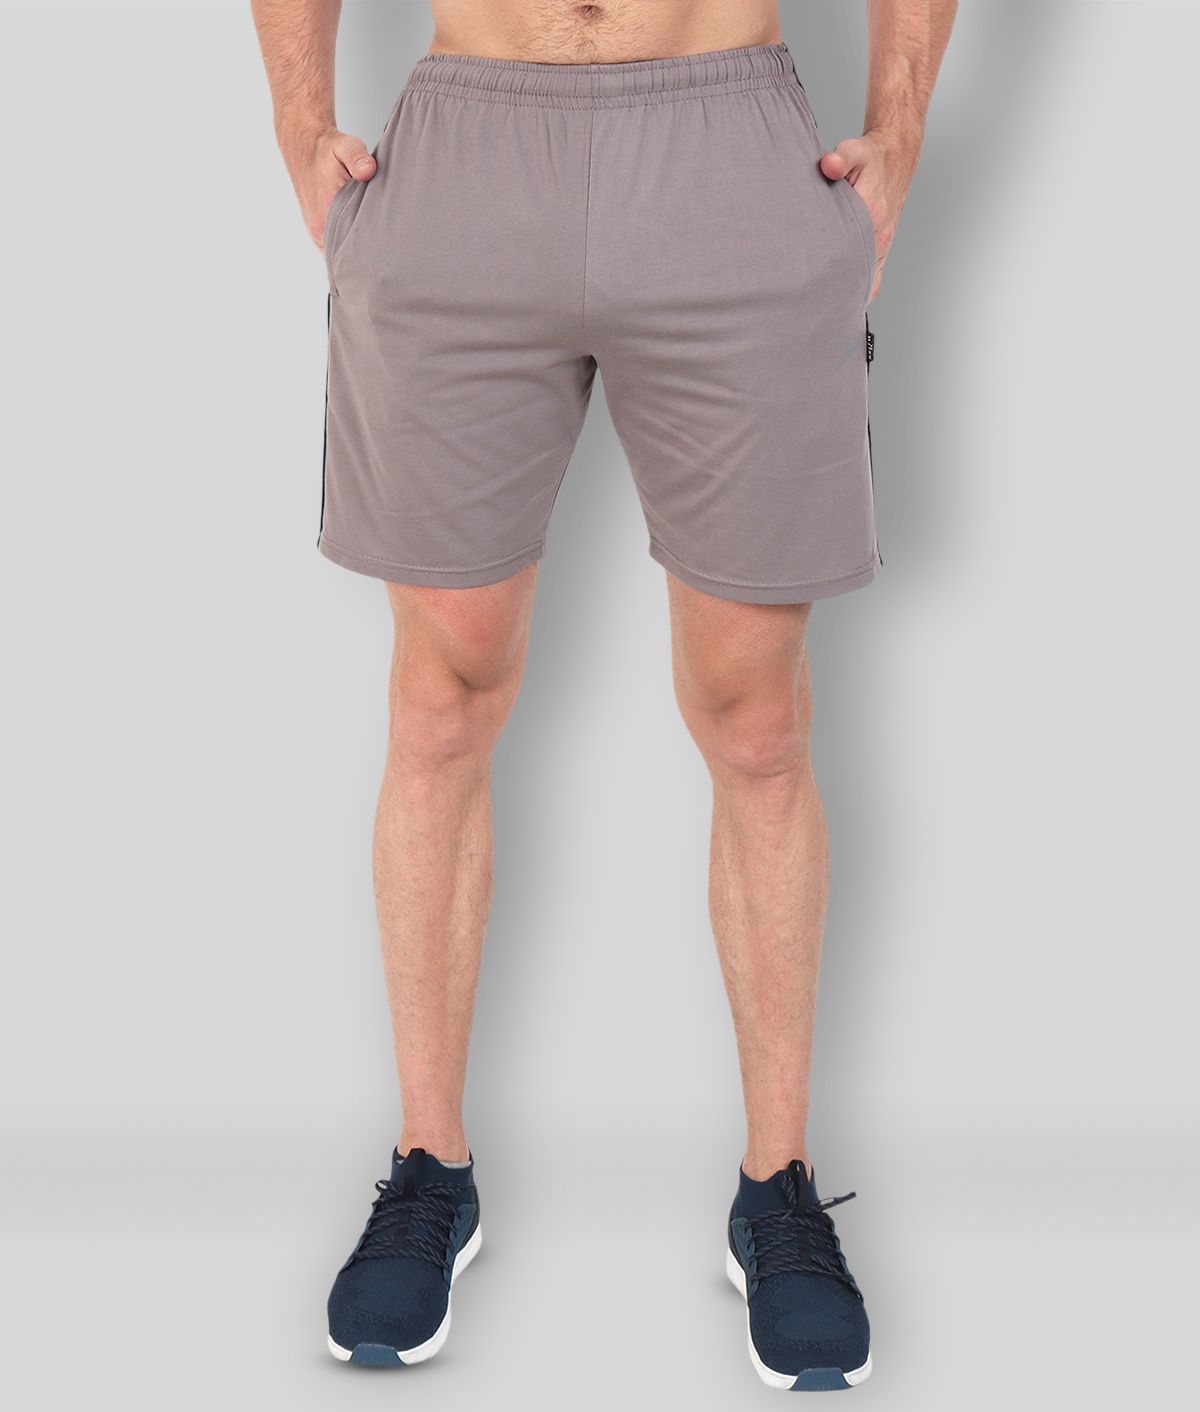     			Zeffit - Silver Cotton Blend Men's Shorts ( Pack of 1 )